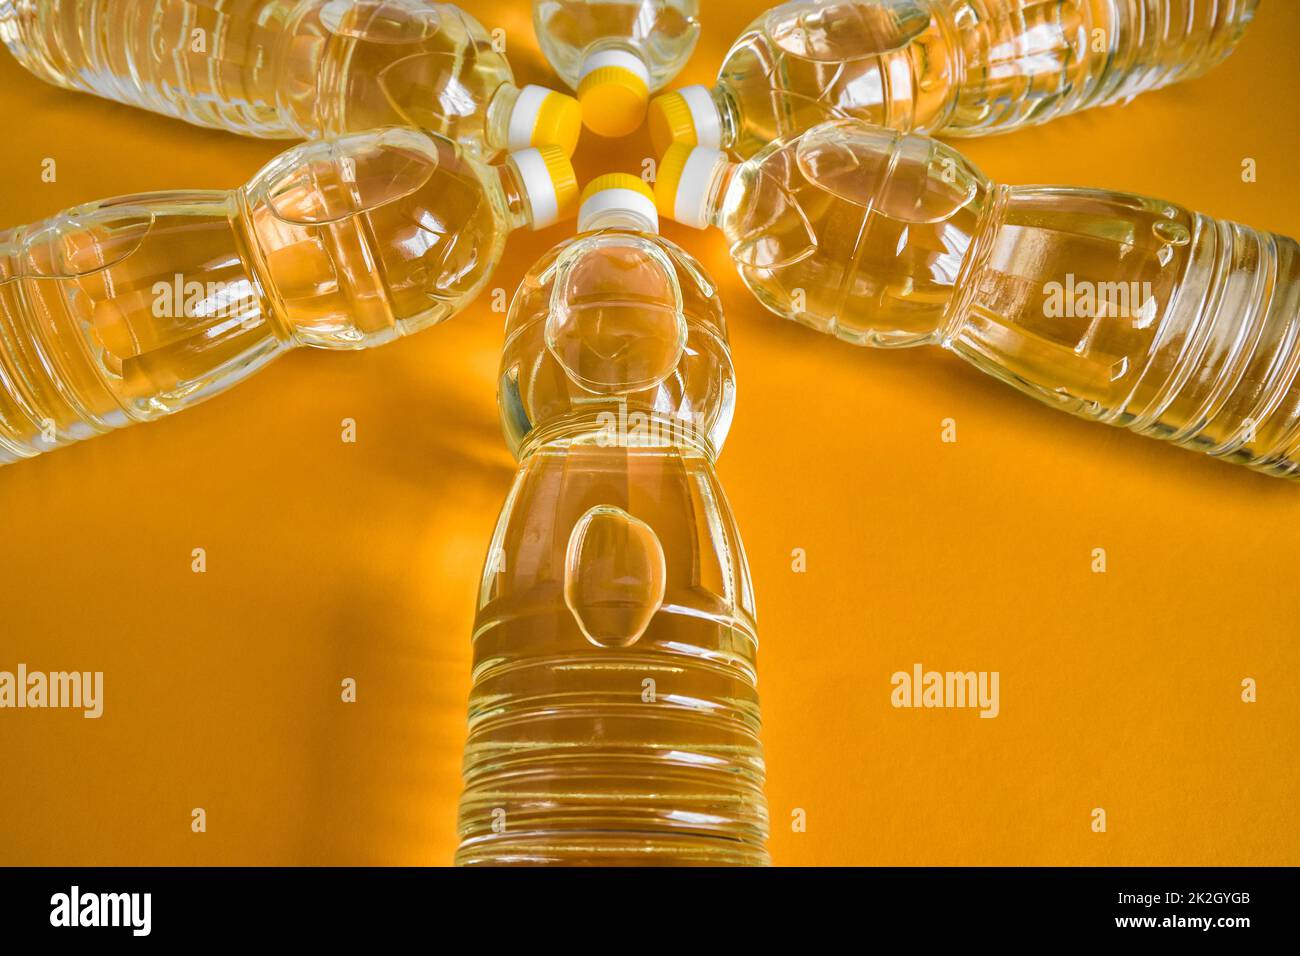 Vue de dessus des bouteilles avec huile de tournesol raffinée naturelle Banque D'Images